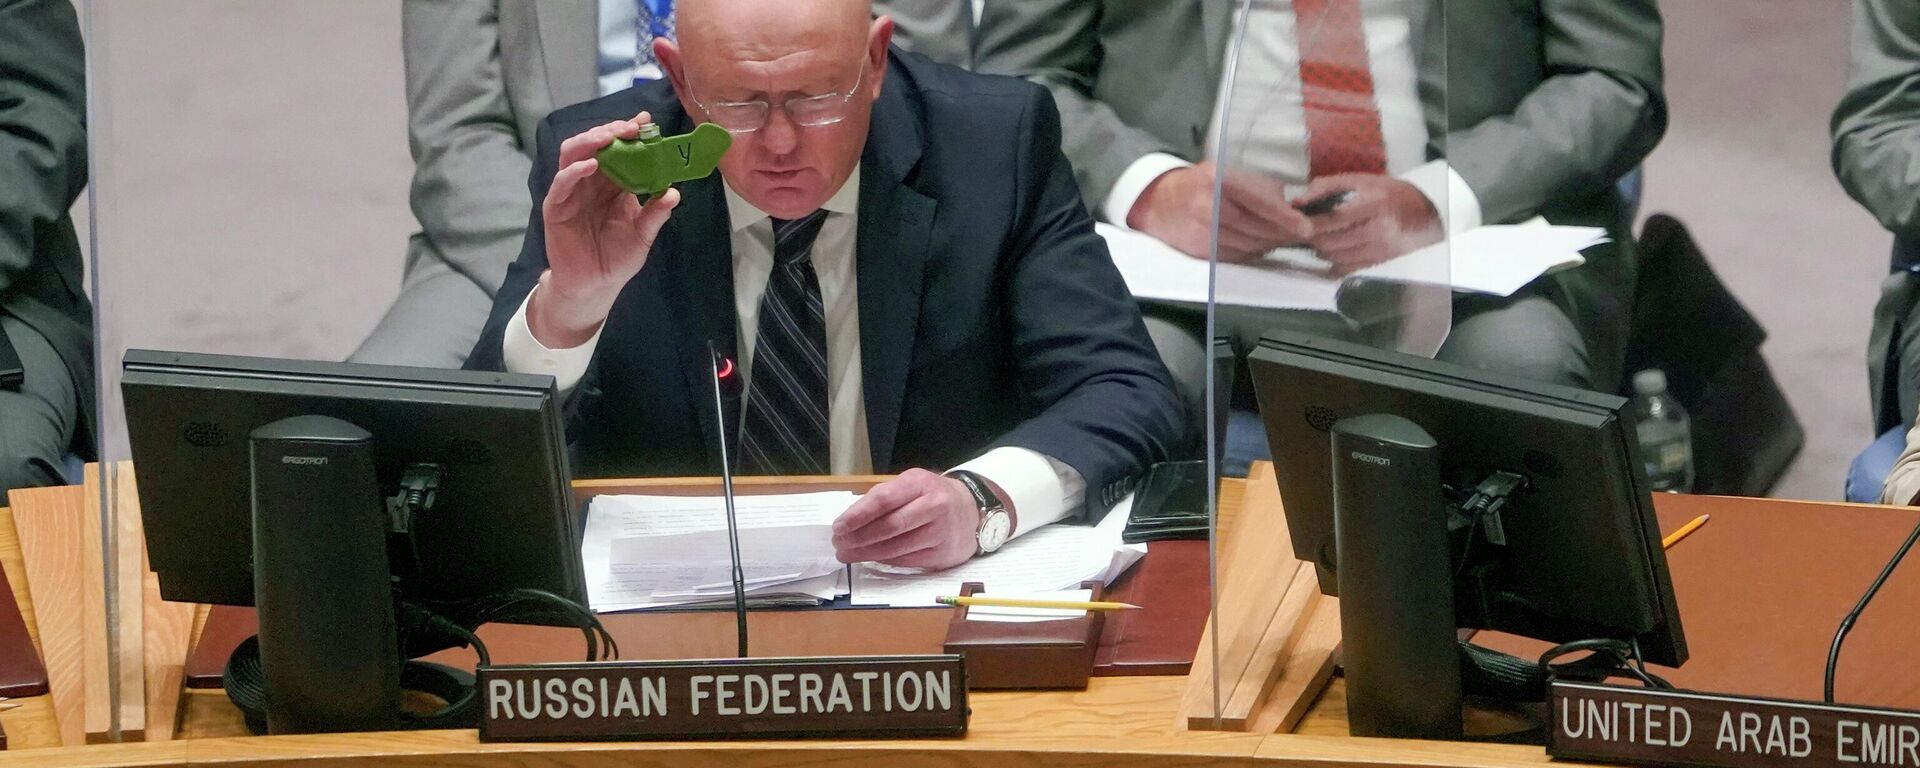 Embaixador russo para as Nações Unidas Vasily Nebenzya segura um pedaço de explosivo durante uma reunião do Conselho de Segurança - Sputnik Brasil, 1920, 24.08.2022